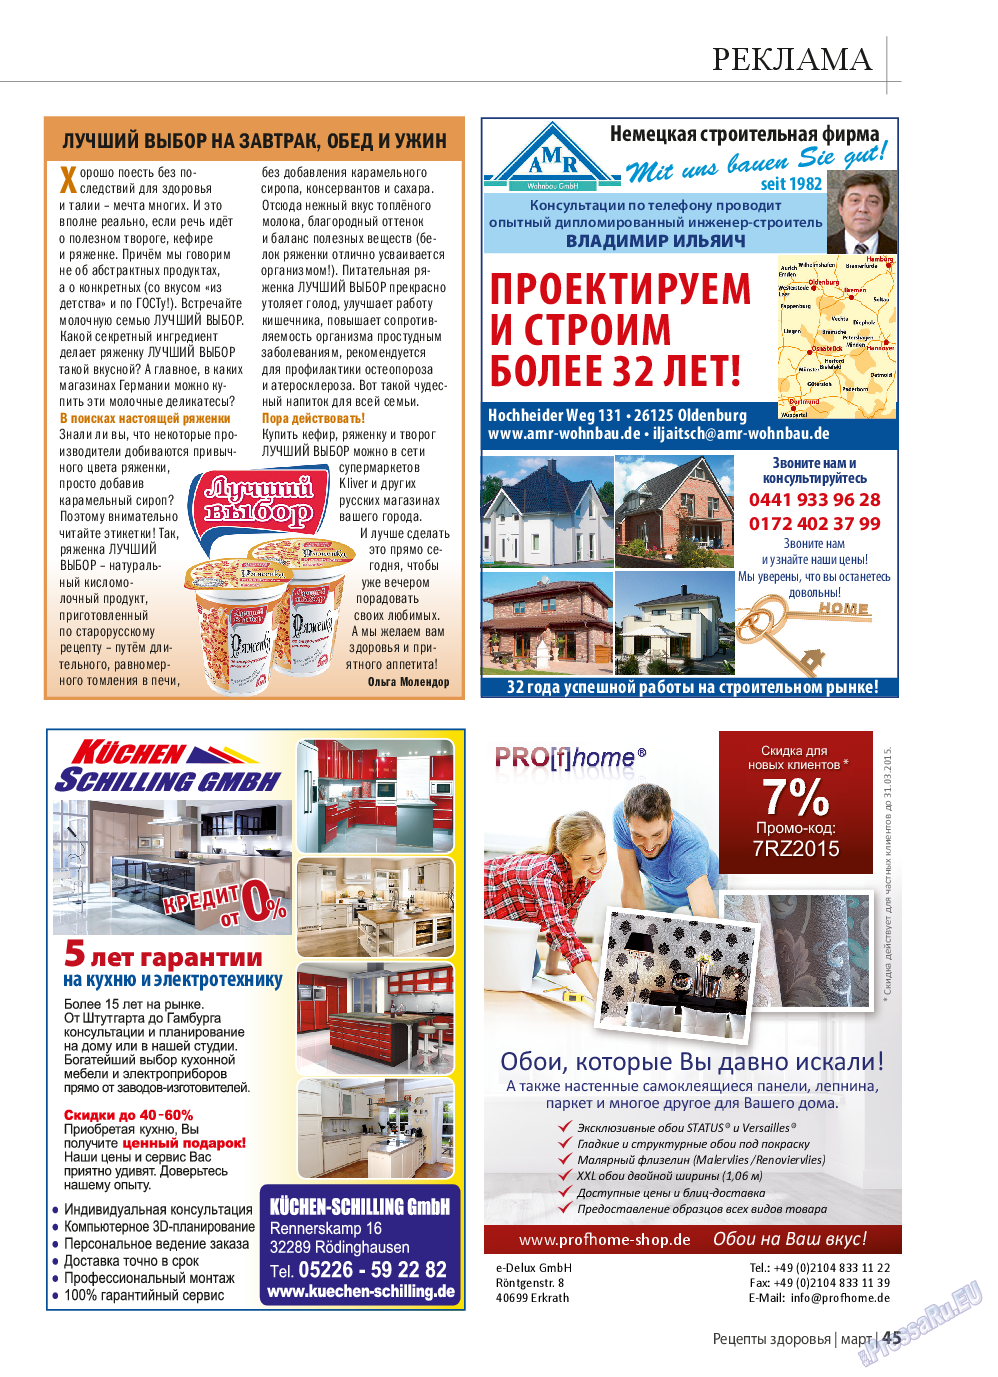 Рецепты здоровья, журнал. 2015 №70 стр.45